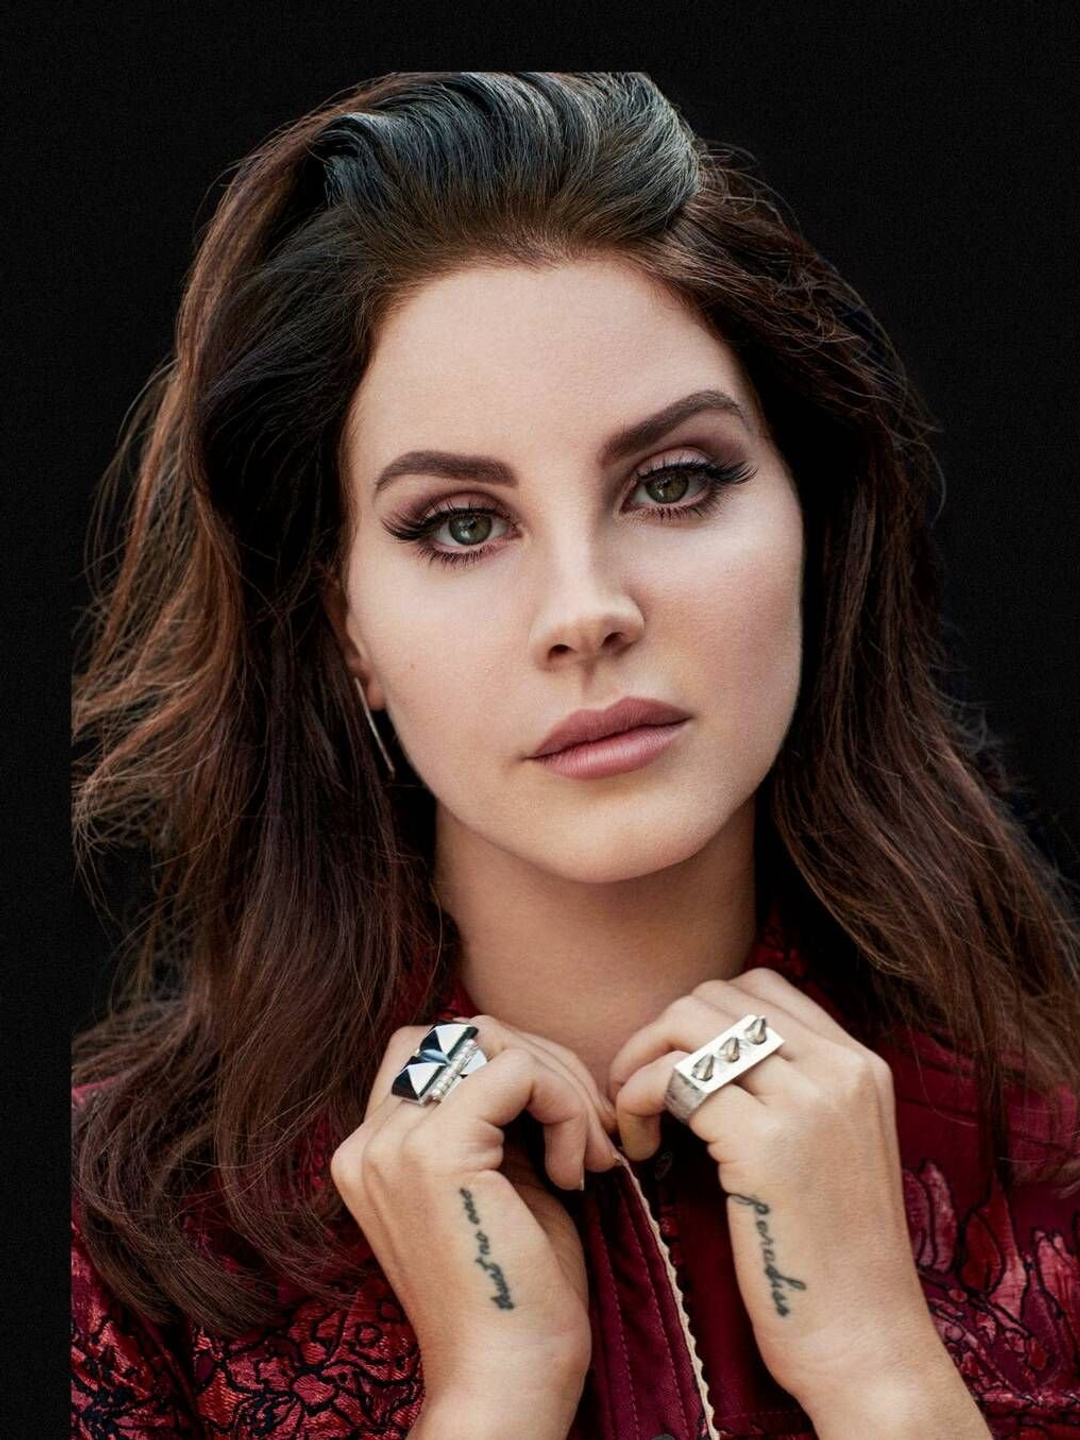 Lana Del Rey her zodiac sign